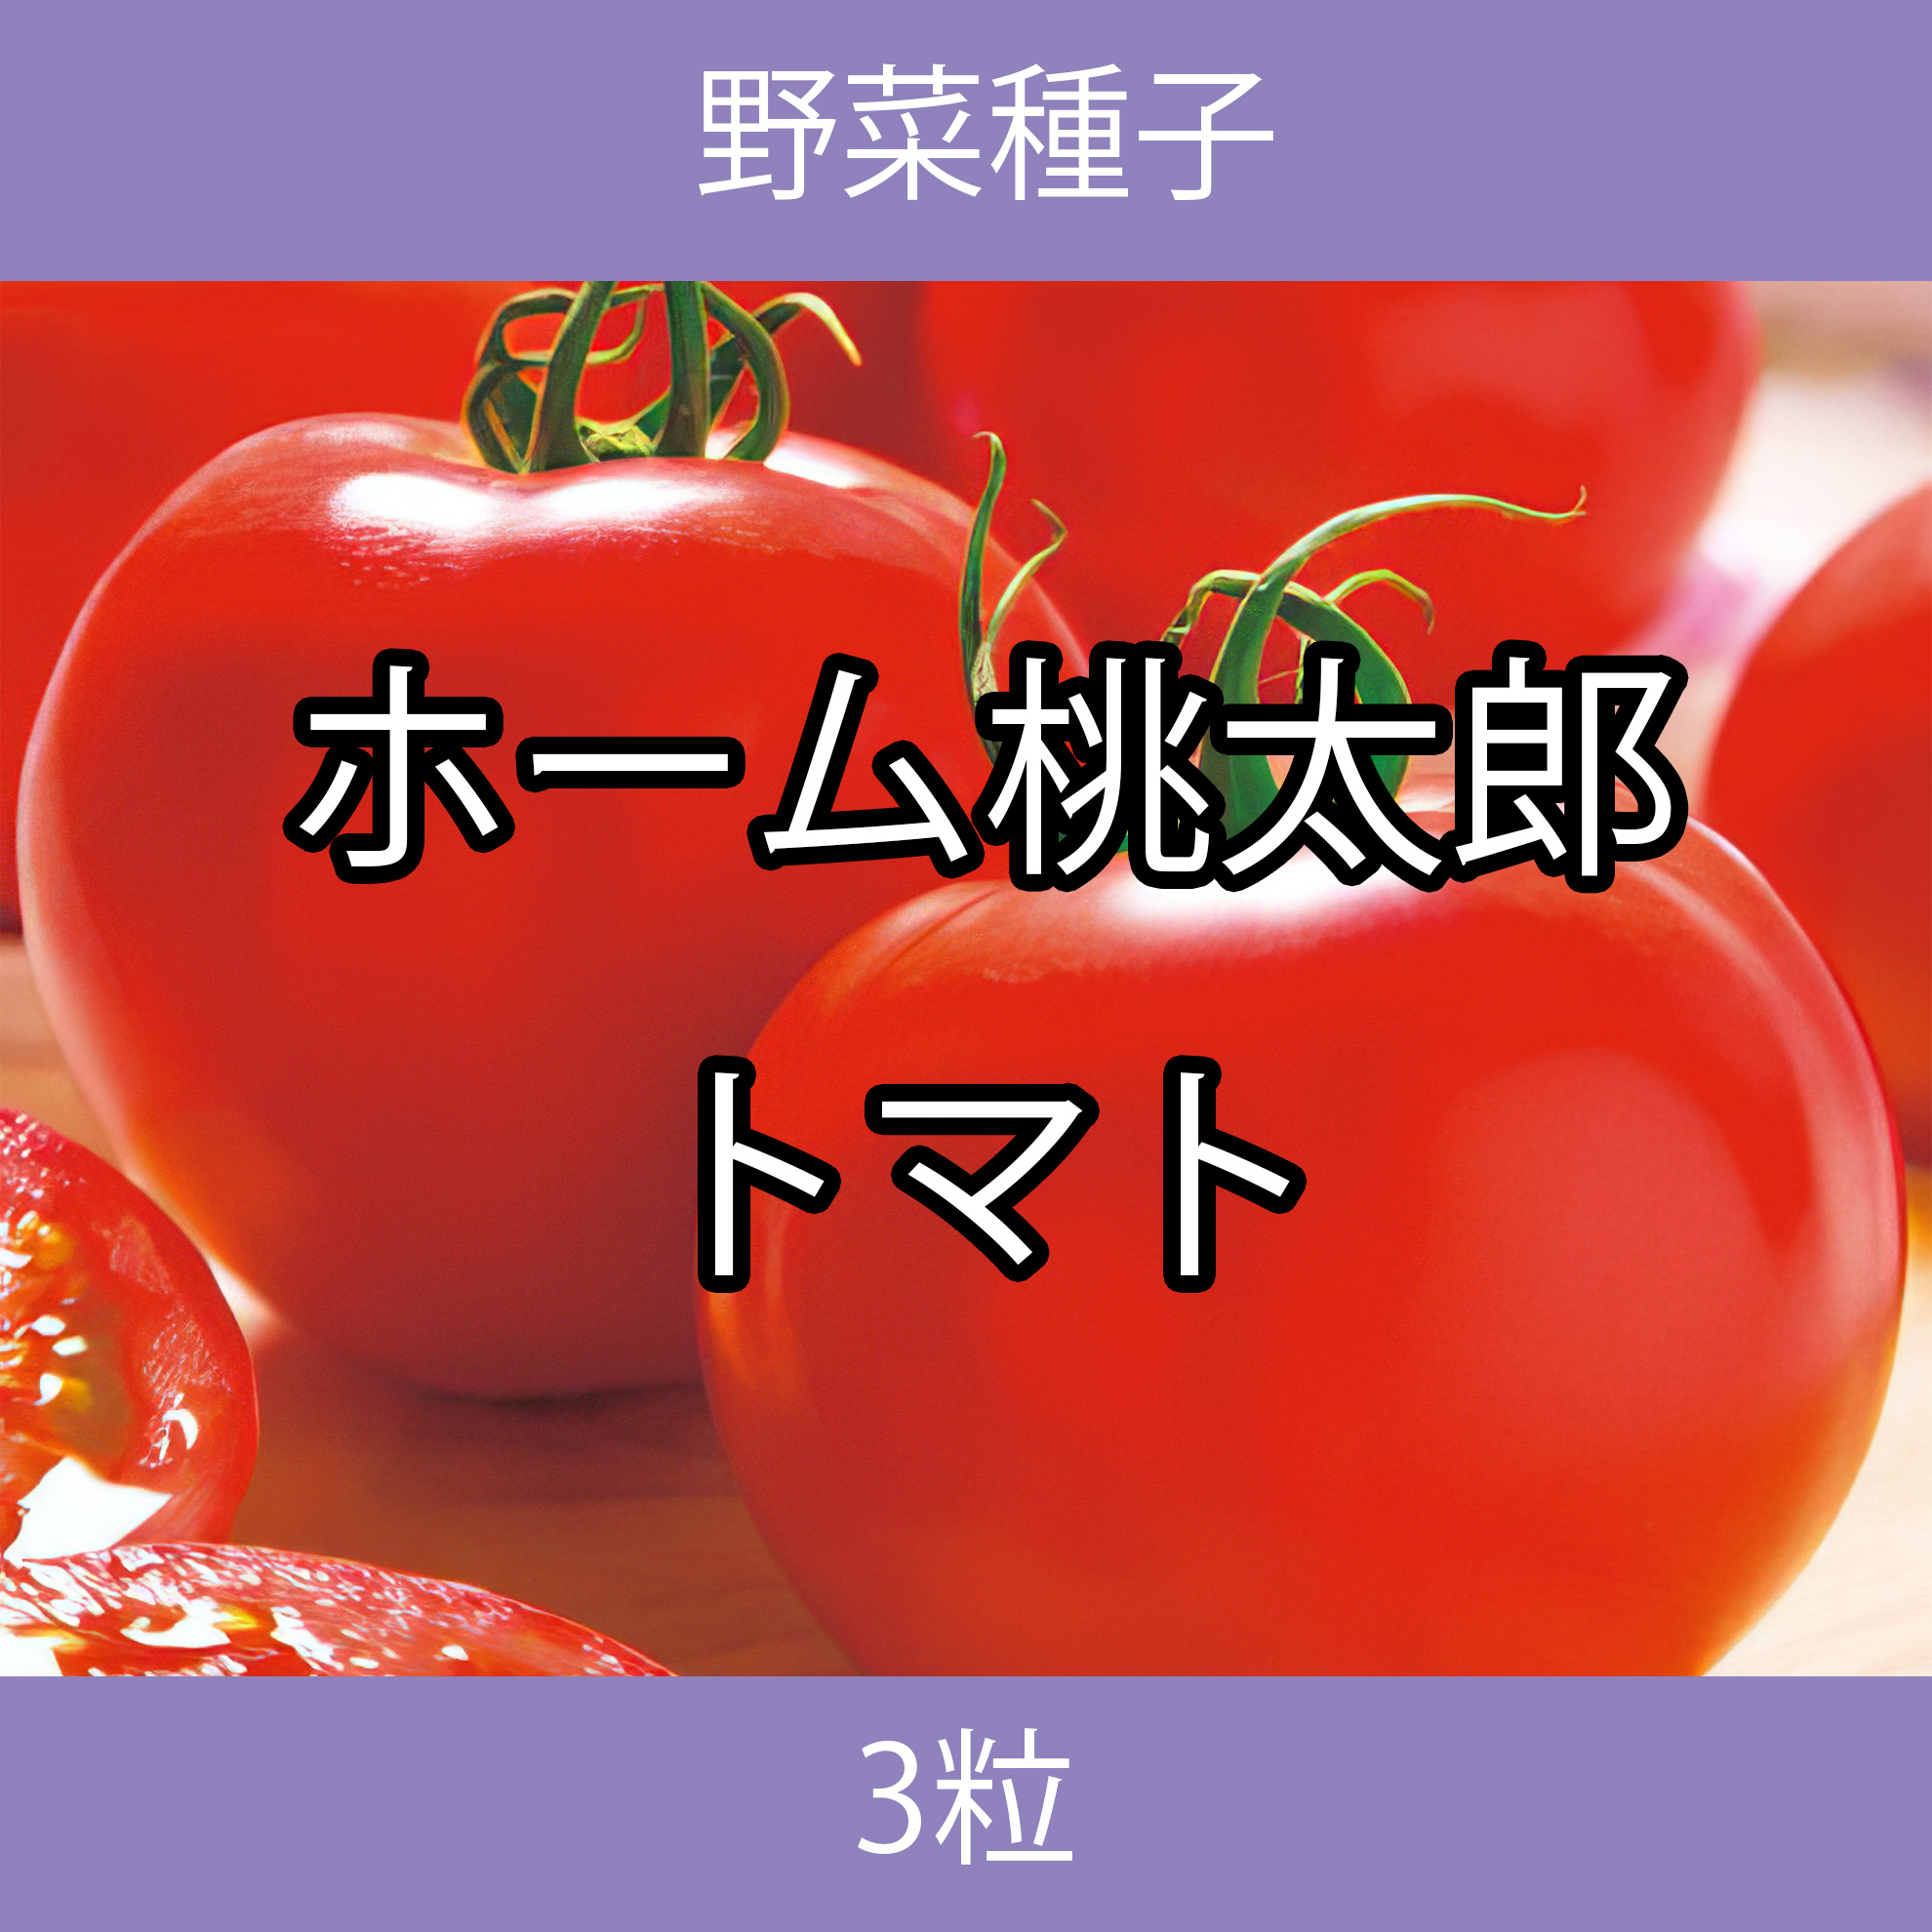 野菜種子 TVK09 ホーム桃太郎トマト 3粒